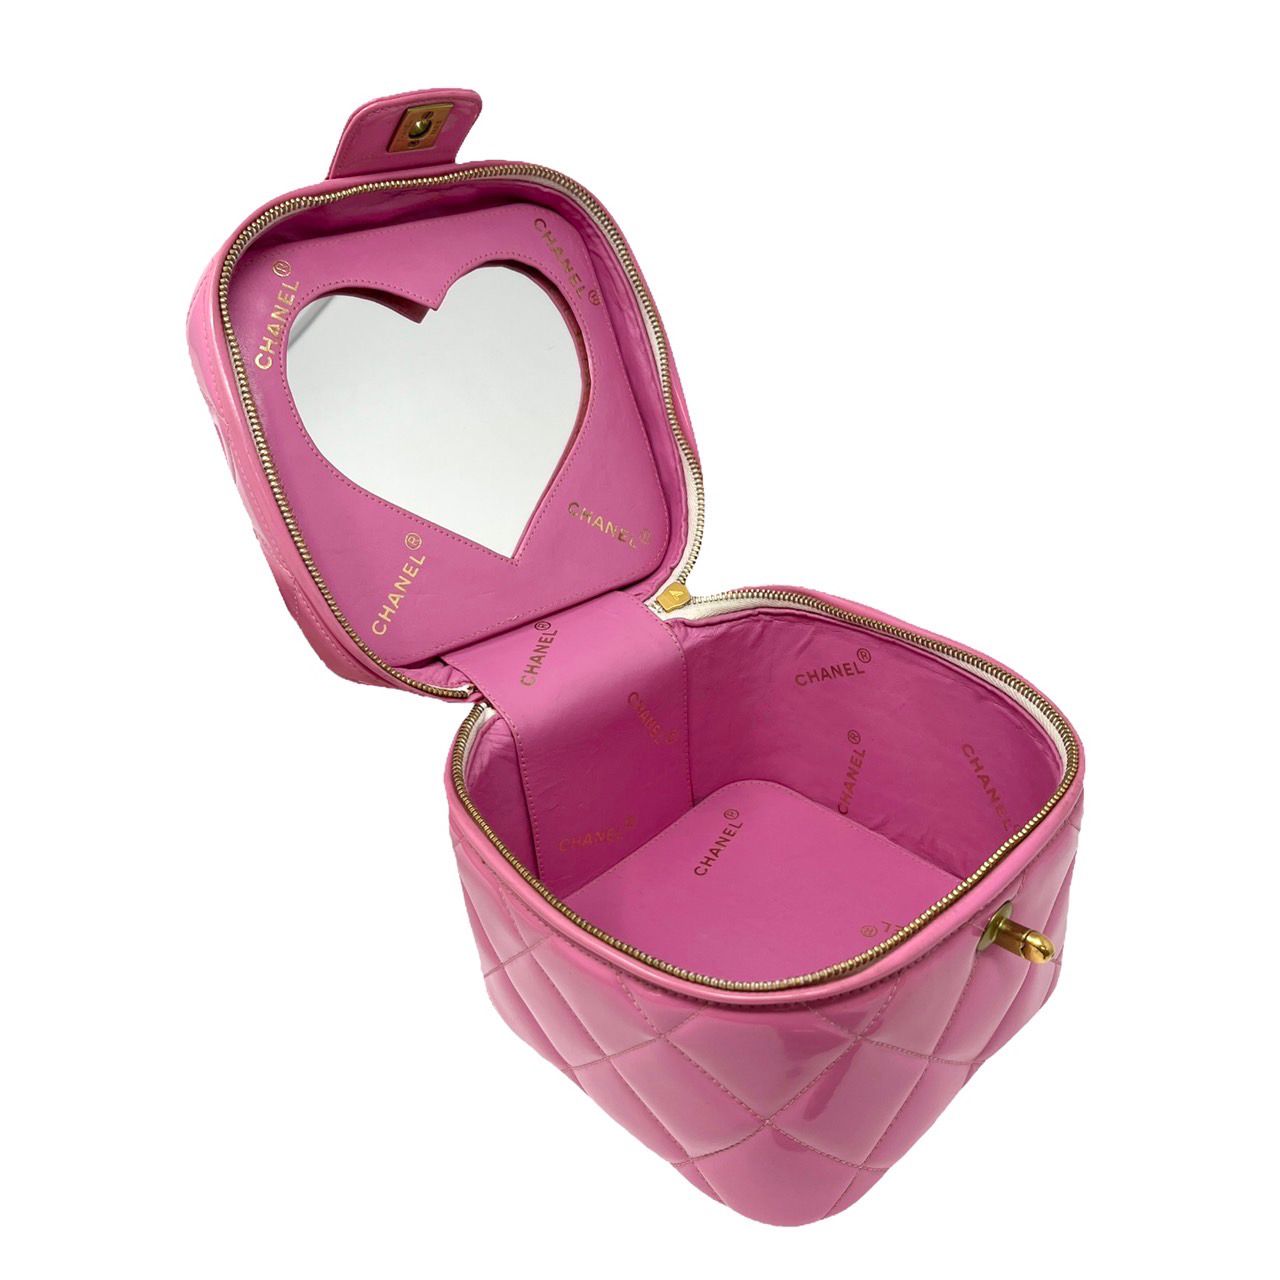 Treasures of NYC - Chanel Pink Turnlock Vanity Bag